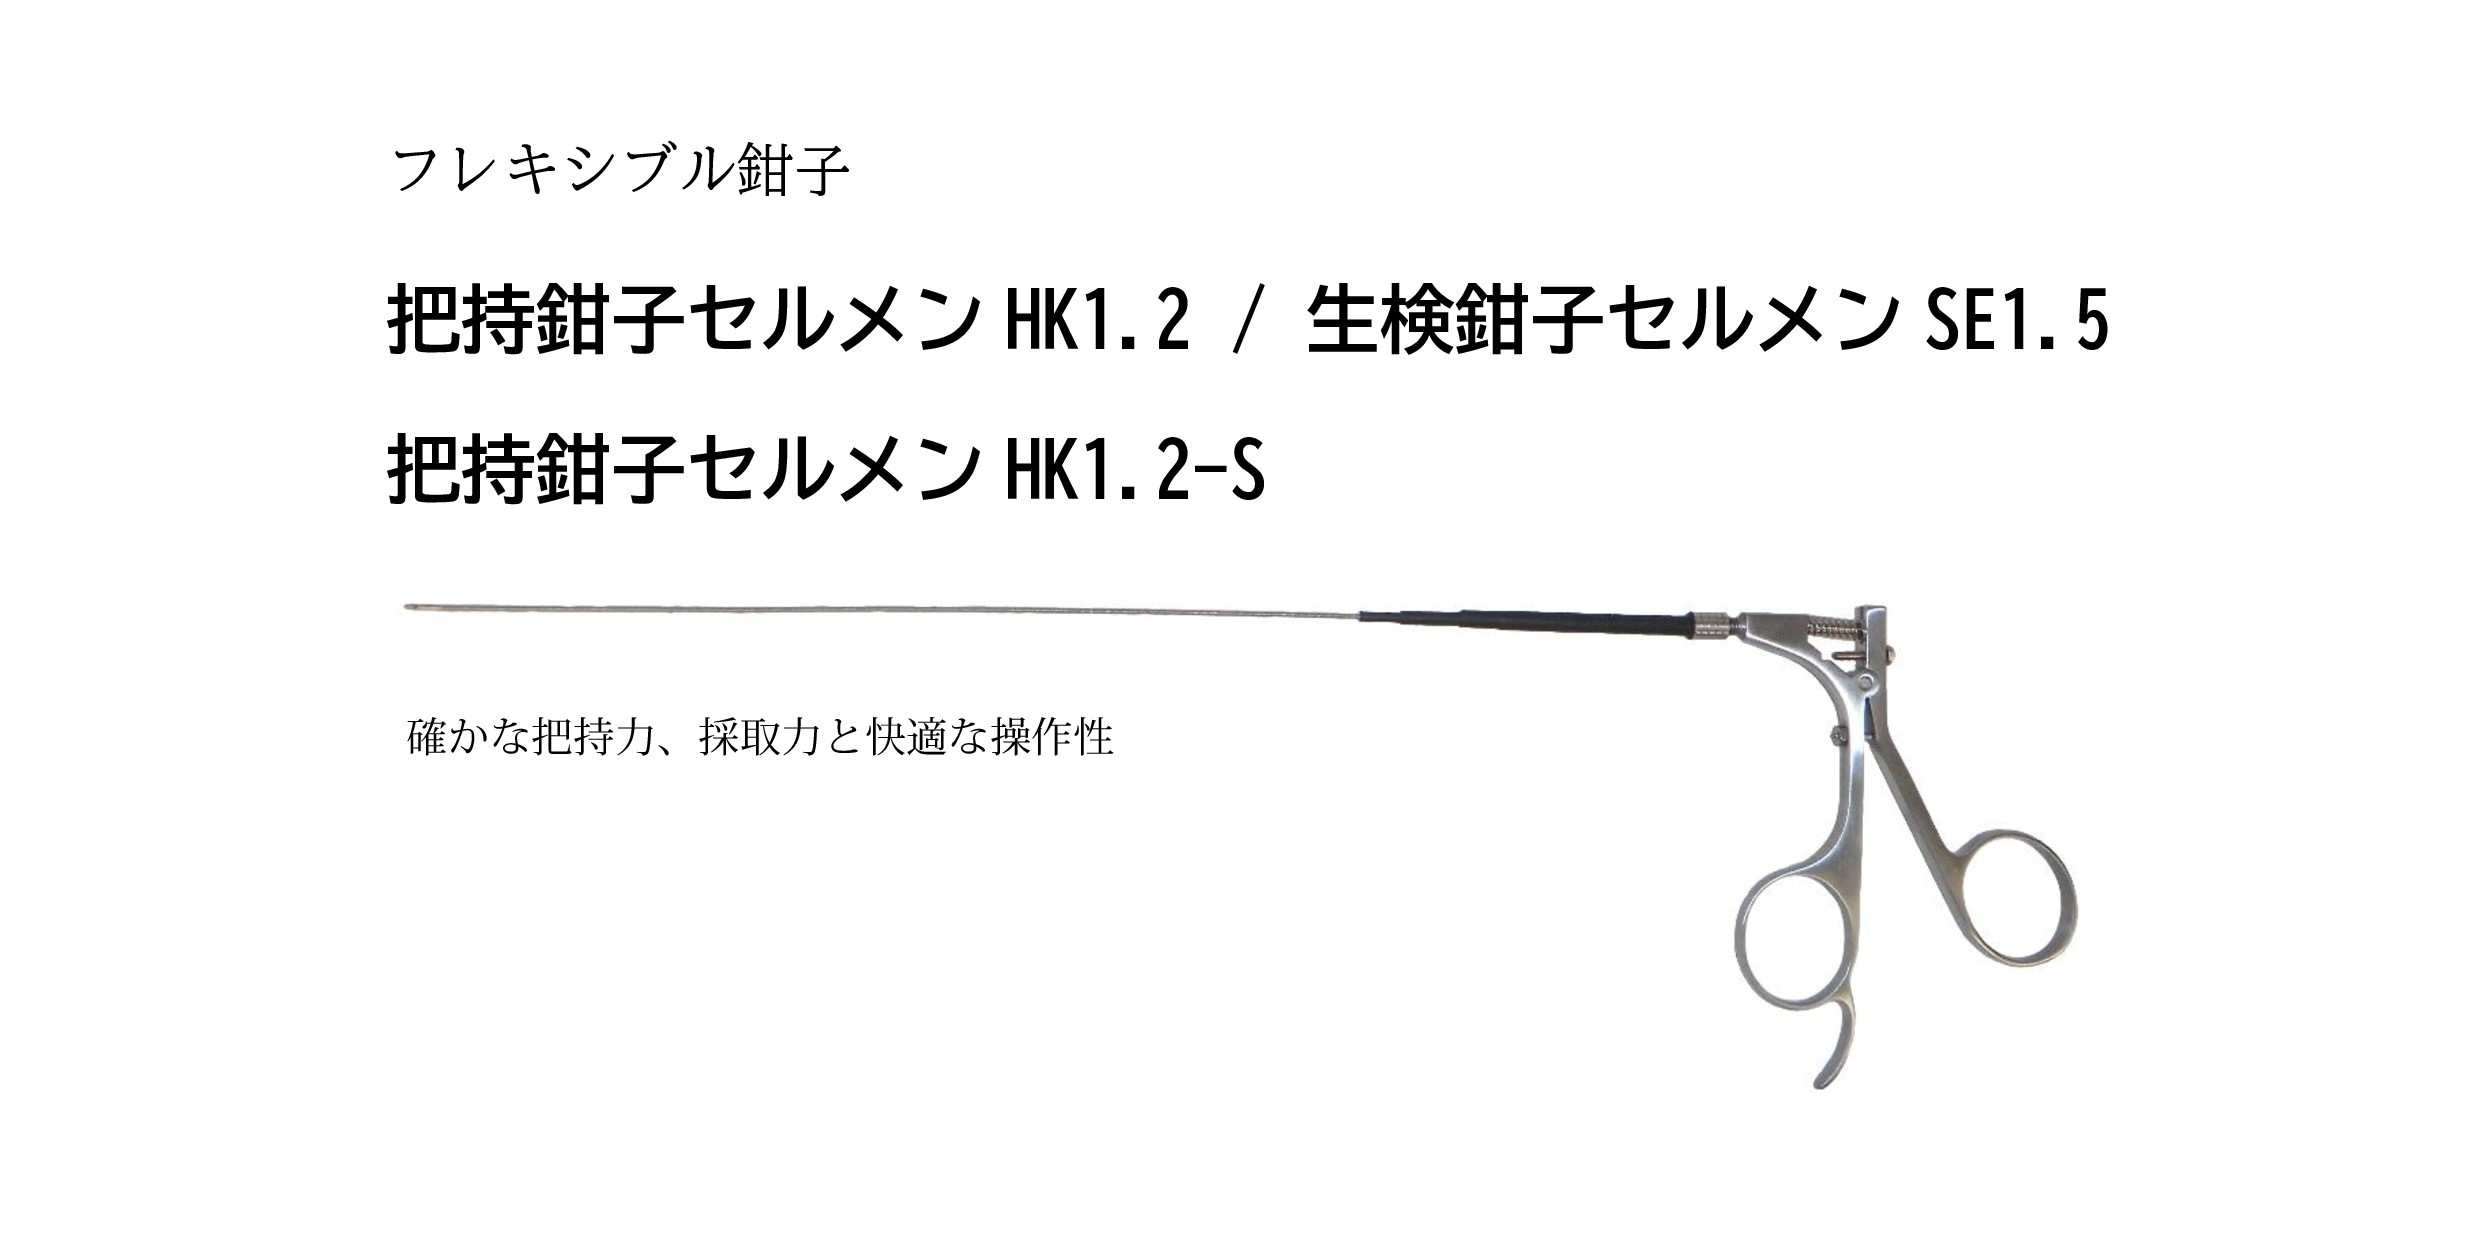 フレキシブル鉗子 セルメン HK1.2／HK1.2-S／SE1.5 - コデン株式会社-CODEN CO.